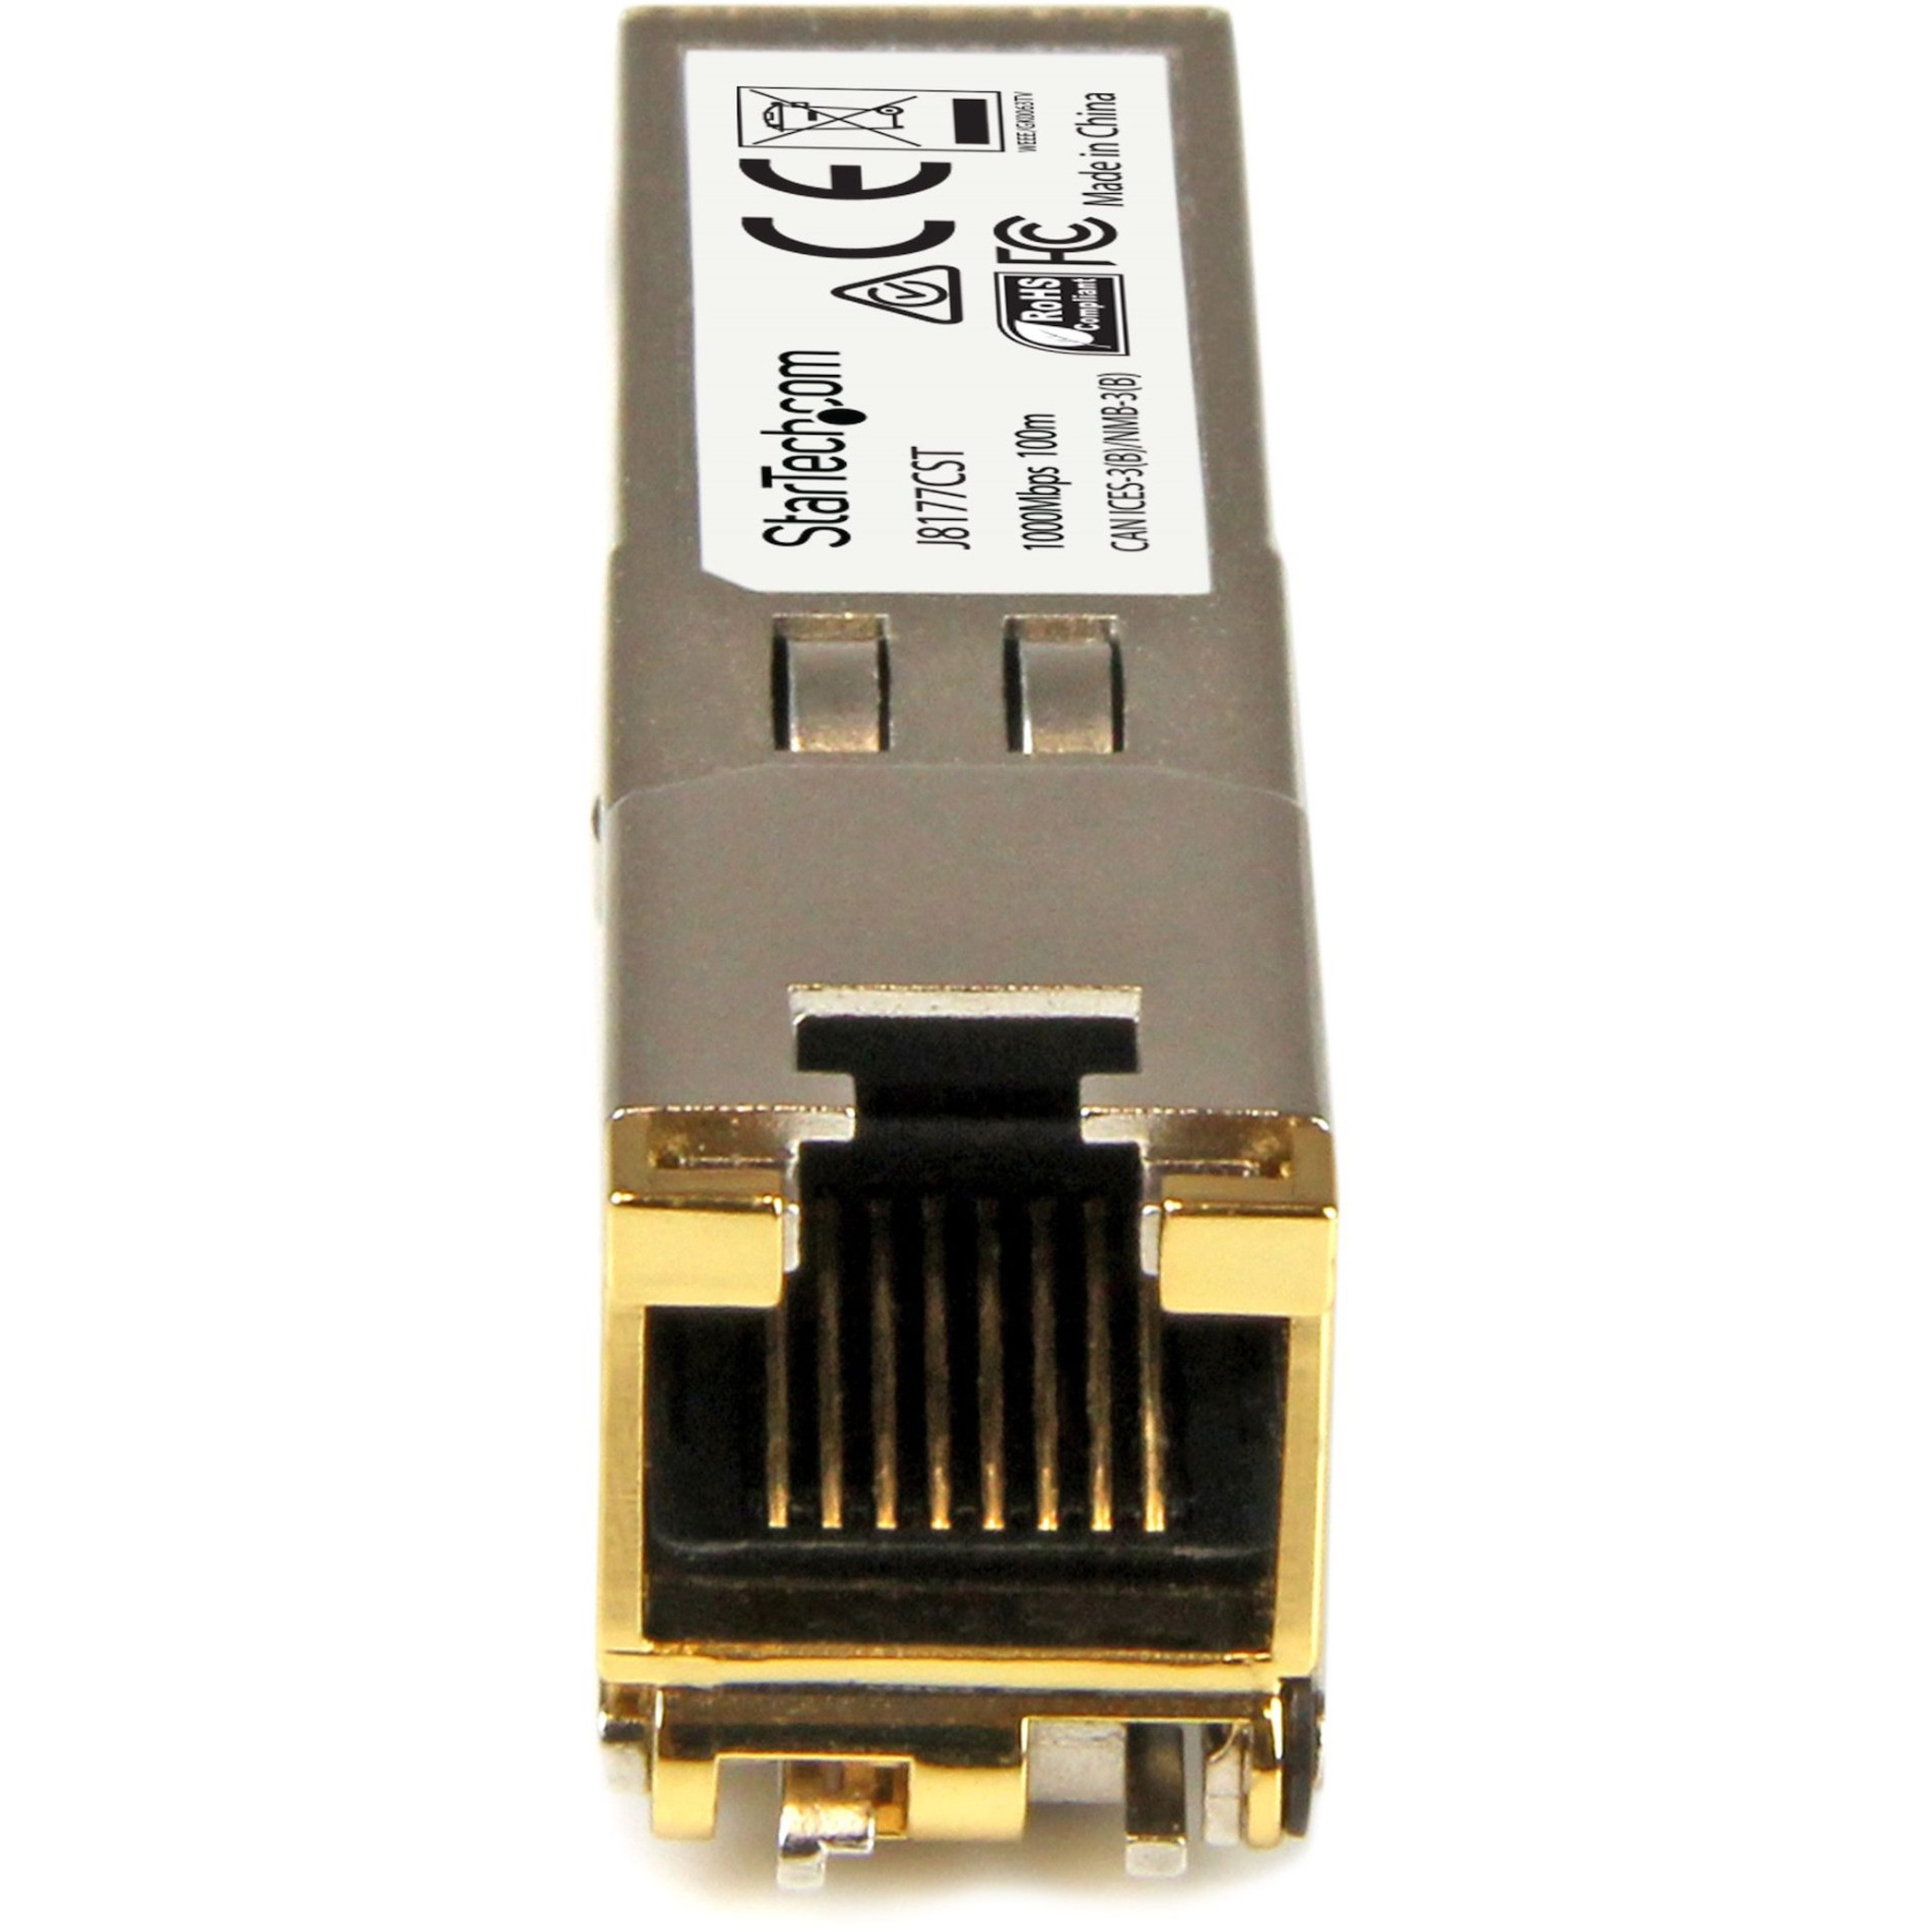 Startech .com HPE J8177C Compatible SFP Module1000BASE-T1GE Gigabit Ethernet SFP SFP to RJ45 Cat6/Cat5e100mHPE J8177C Compatible SFP… J8177CST